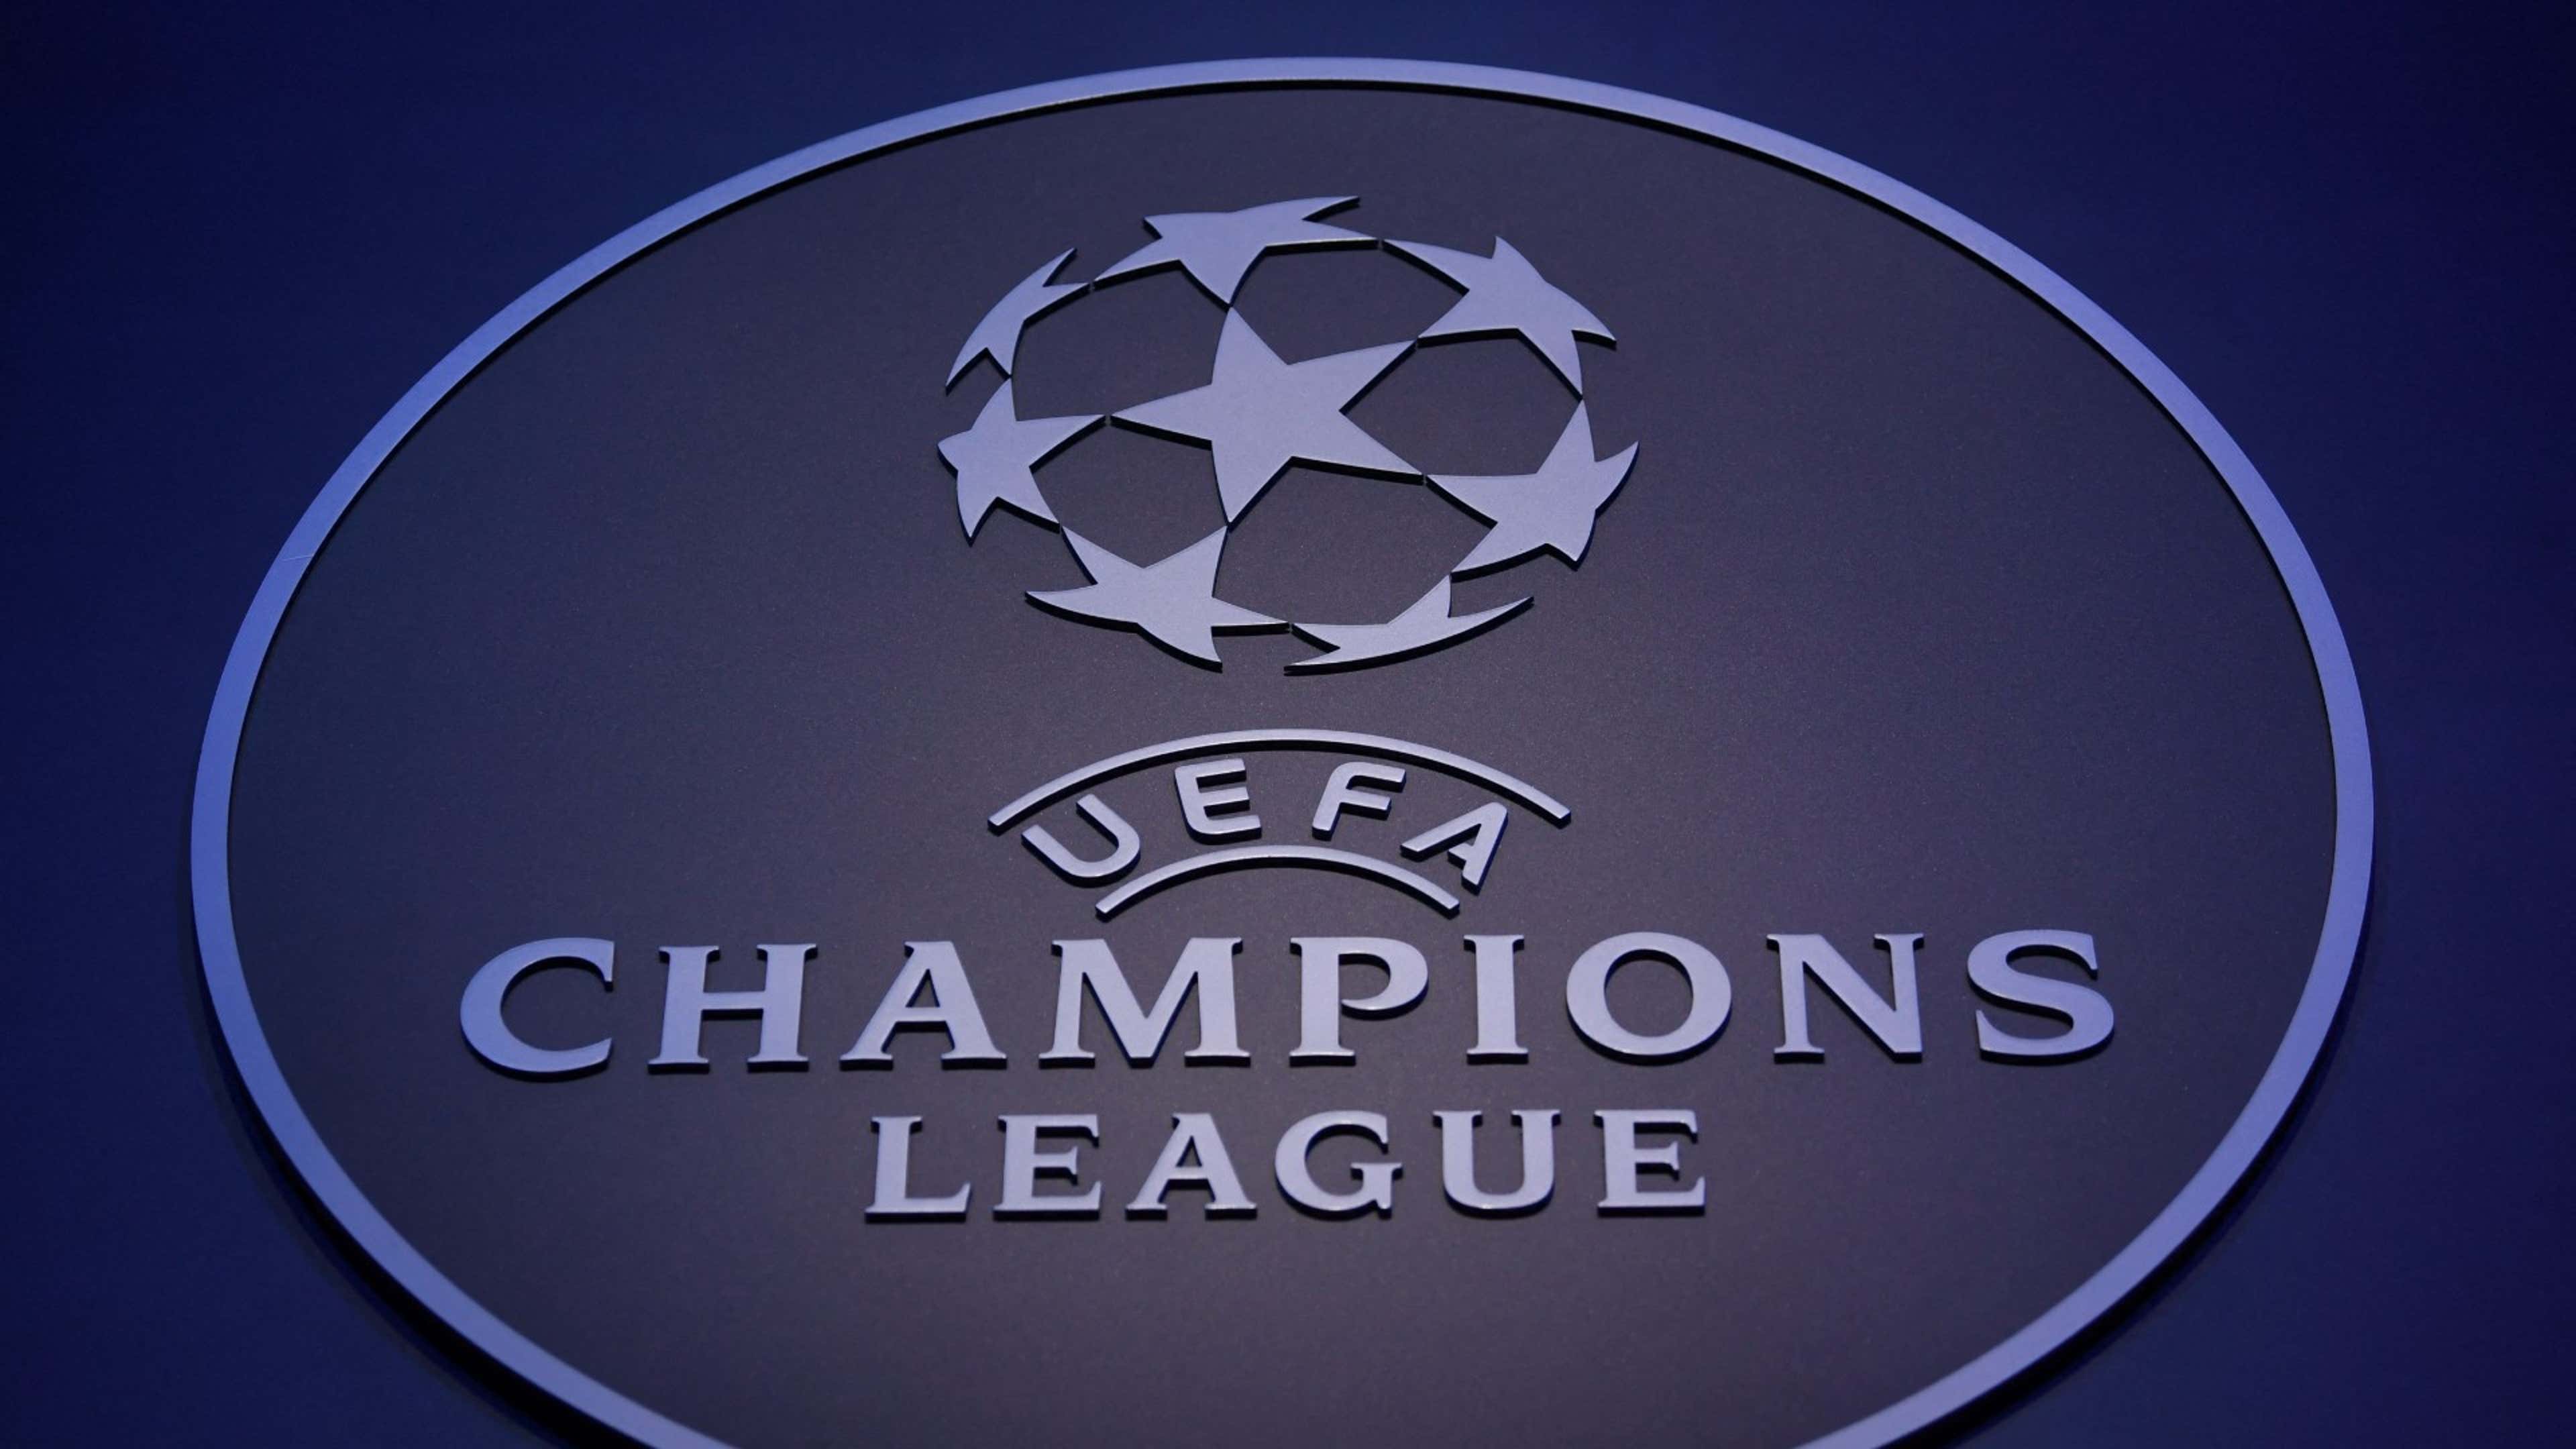 Veja todas as partidas da Champions League com transmissão do SBT